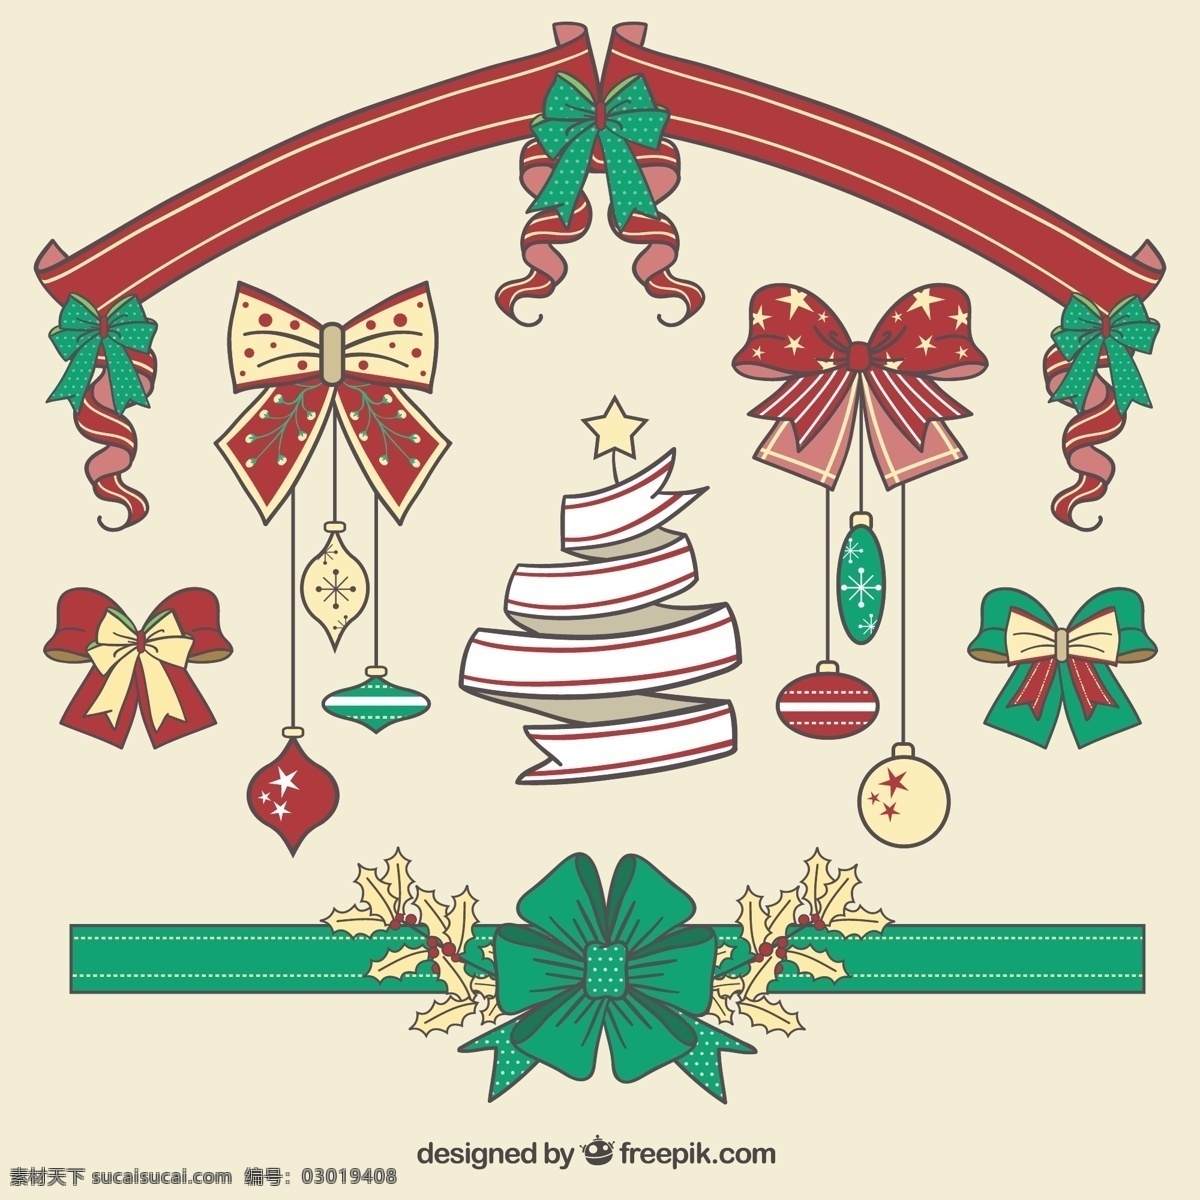 圣诞 手绘 装饰带 收藏 圣诞节 一方面 家庭 新的一年 圣诞快乐 冬天 装饰 缎带 蝴蝶结 新的装饰 绘画 今年 观赏 文化 冷 假期